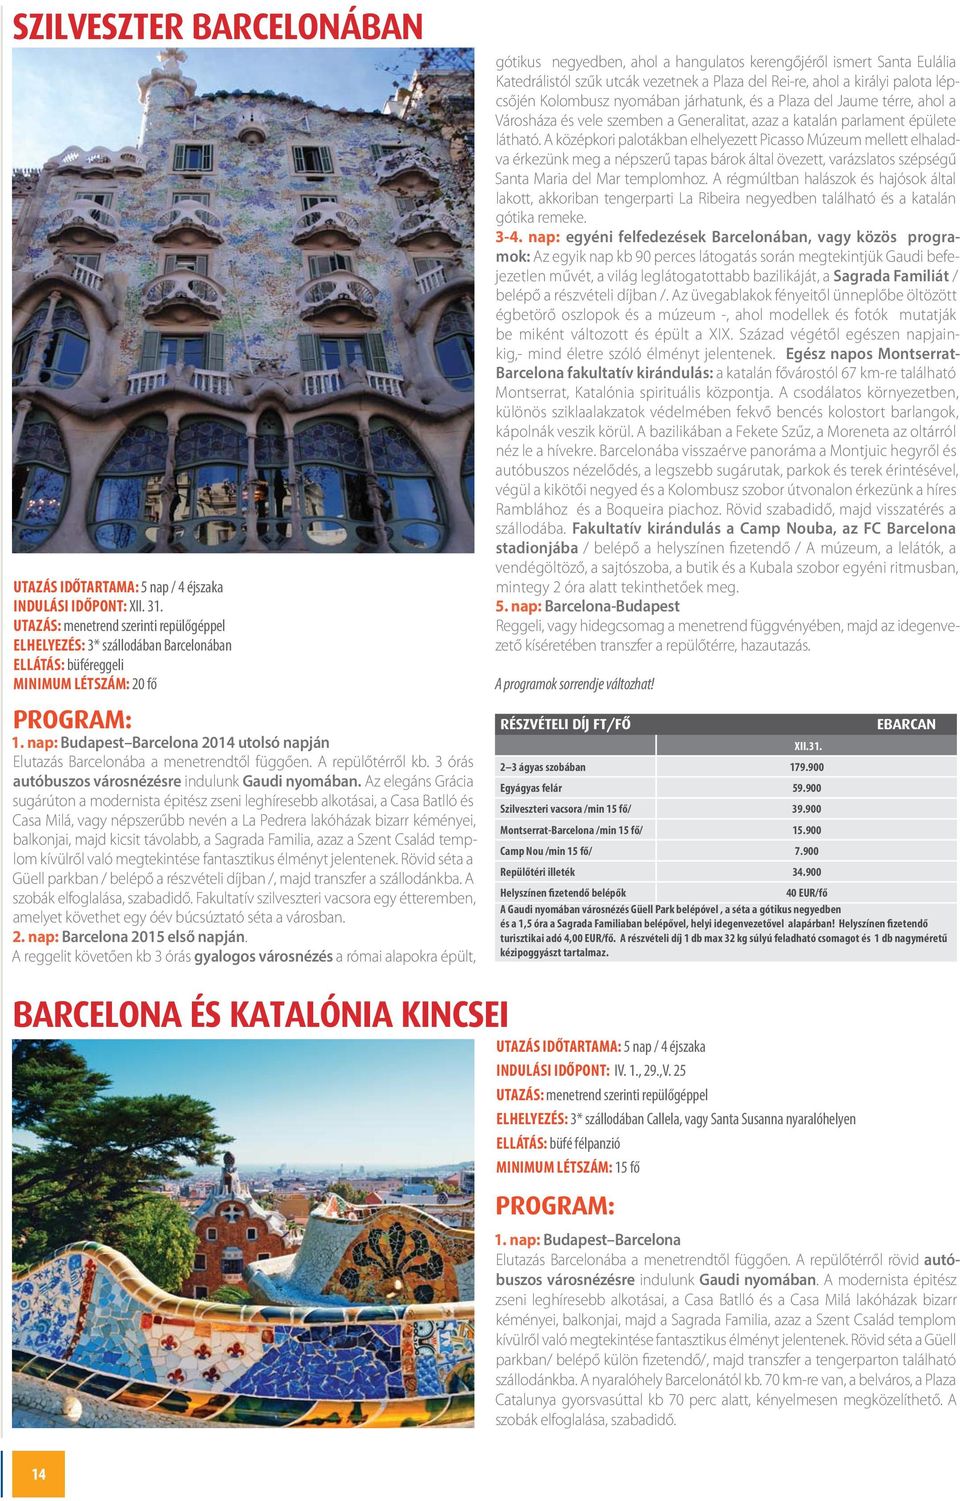 nap: Budapest Barcelona 2014 utolsó napján Elutazás Barcelonába a menetrendtől függően. A repülőtérről kb. 3 órás autóbuszos városnézésre indulunk Gaudi nyomában.